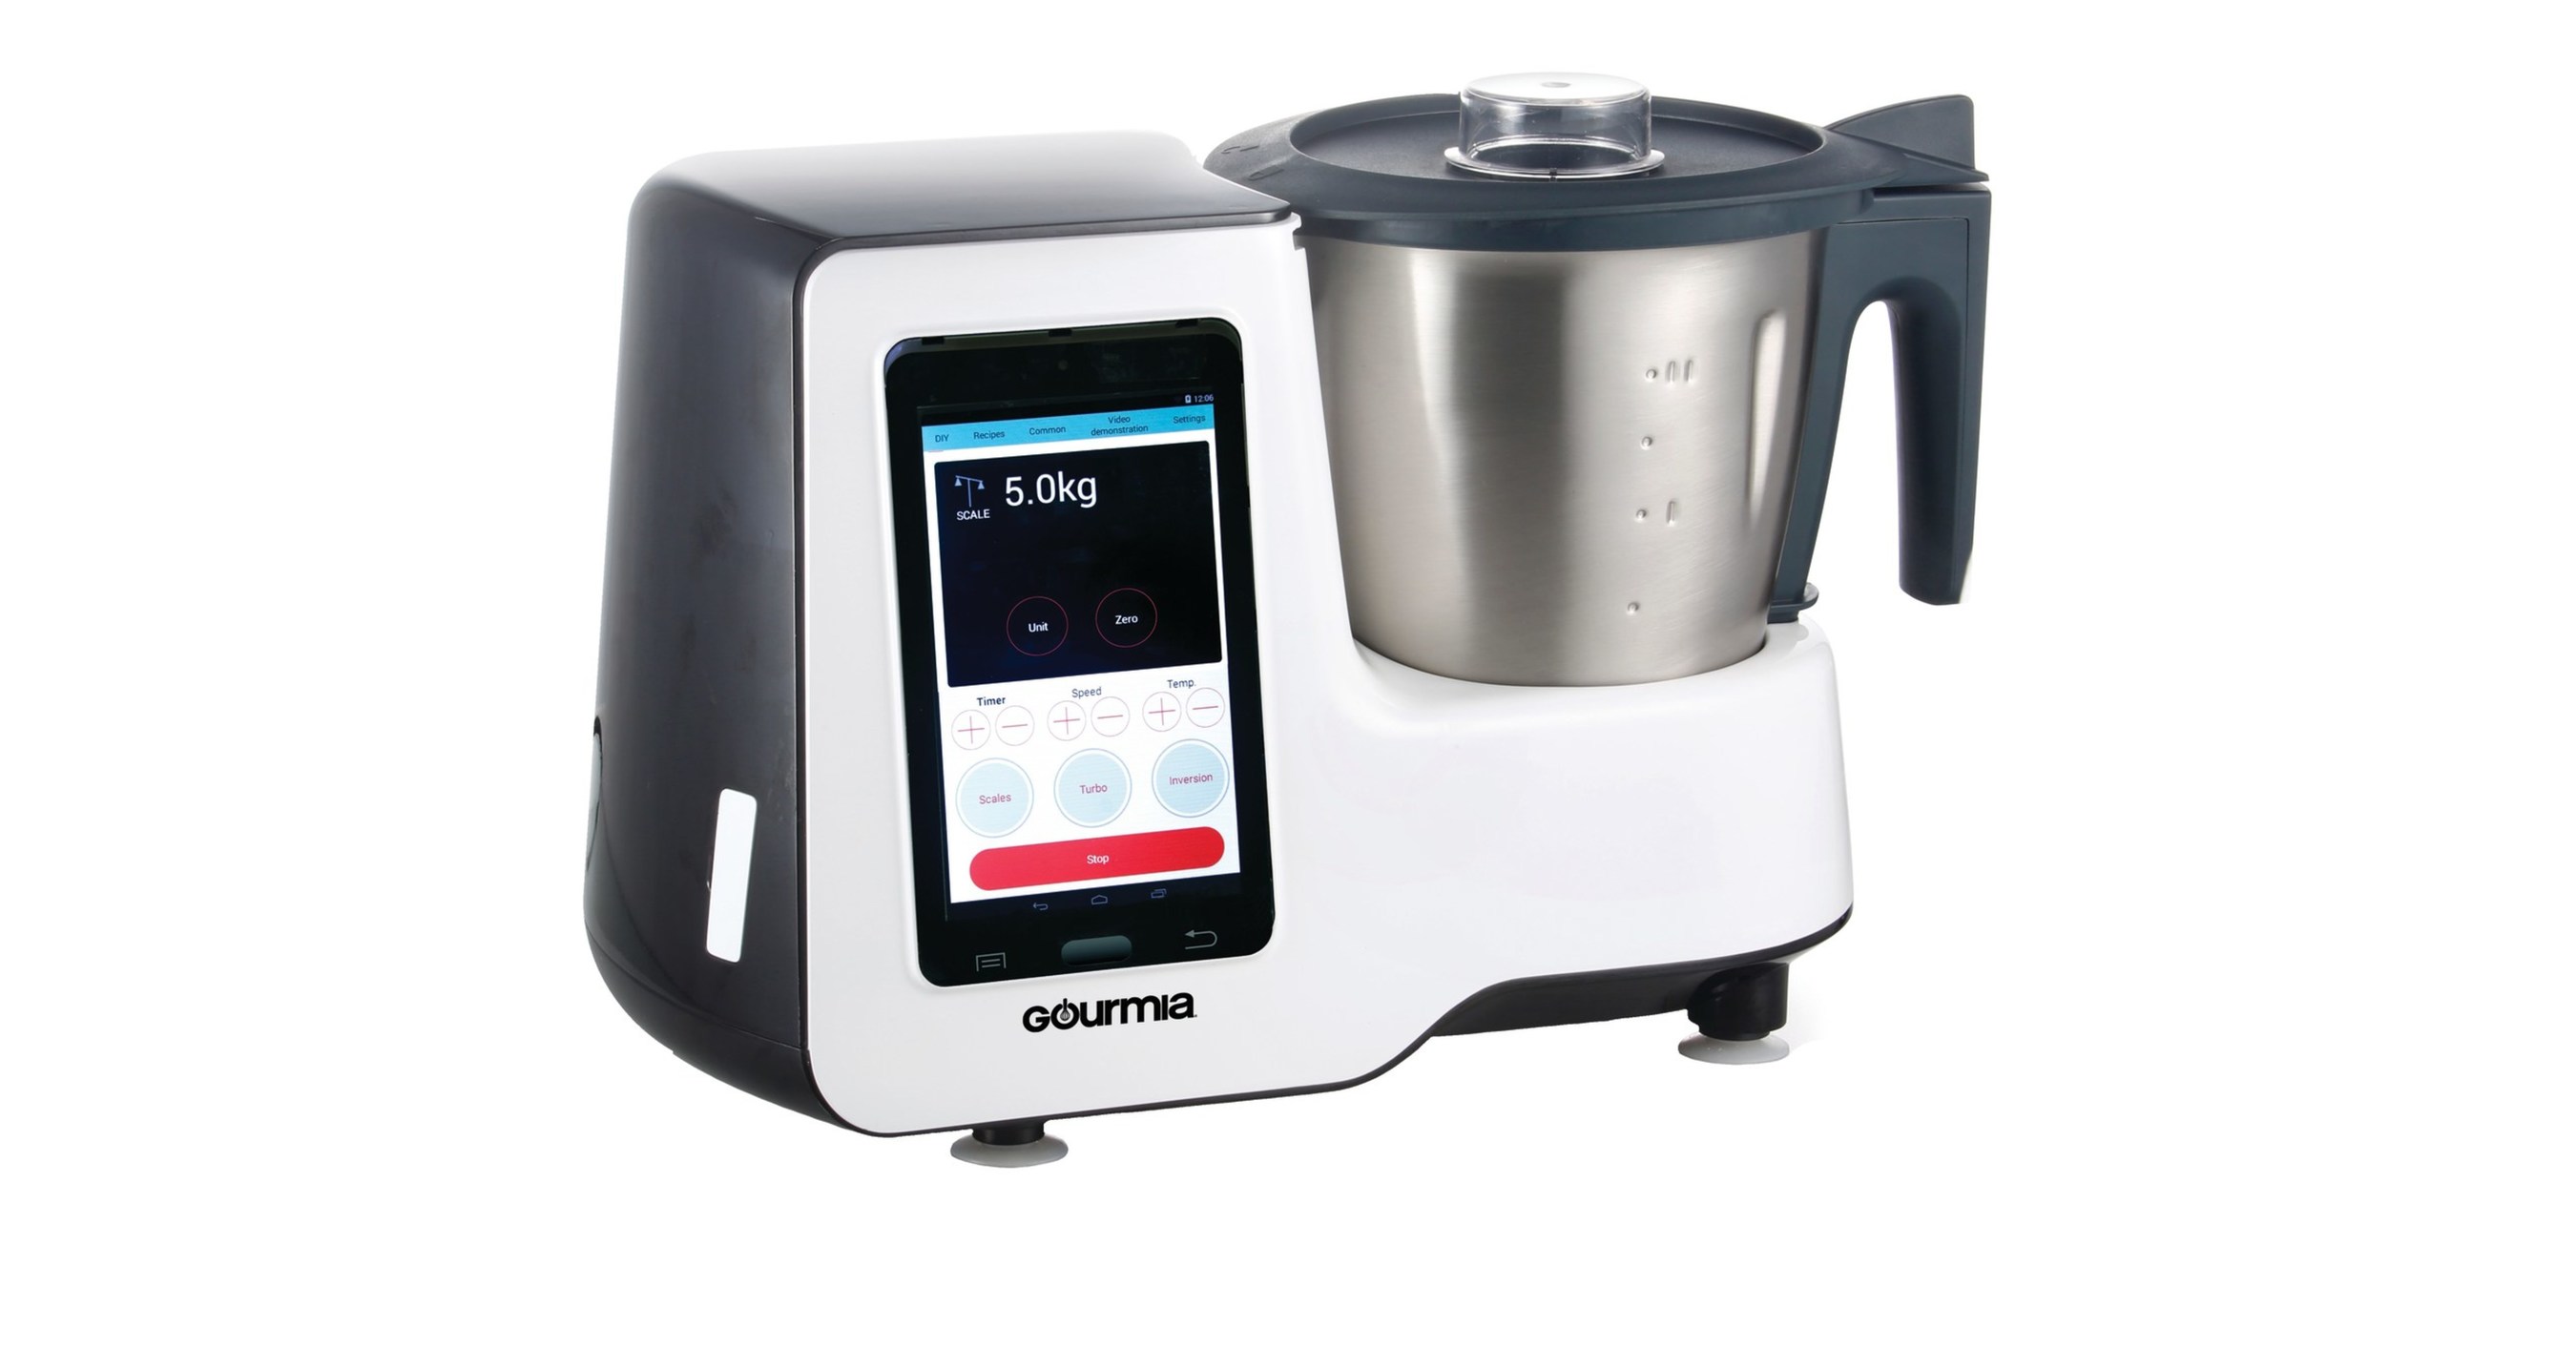 Gourmia's Pour-Over coffee maker listens to Alexa, Google, and Cortana AIs  - CNET